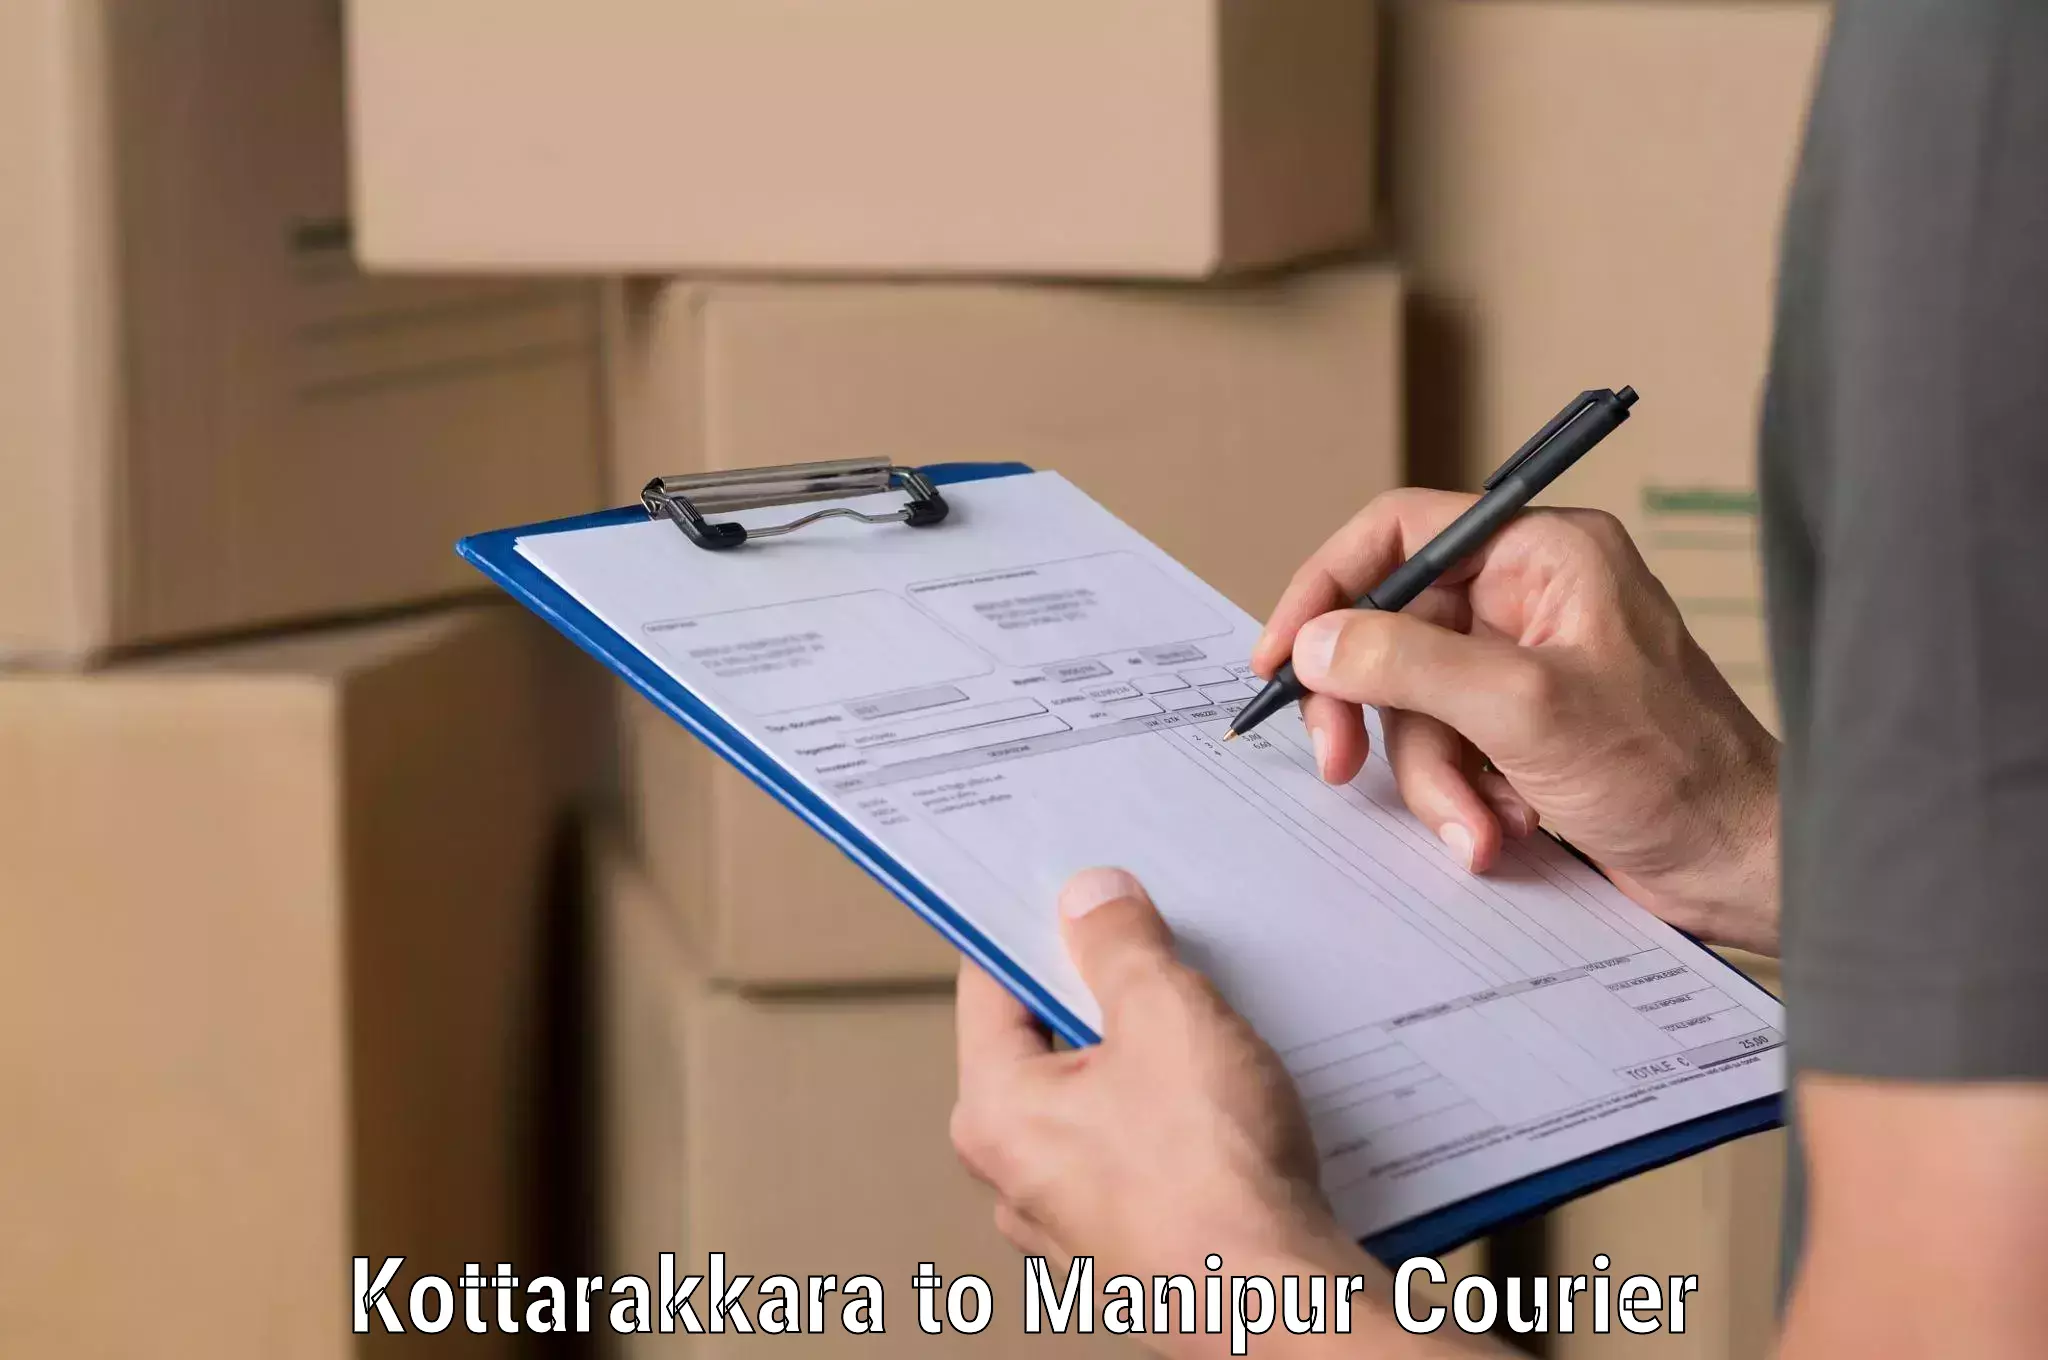 Courier service innovation in Kottarakkara to IIIT Senapati